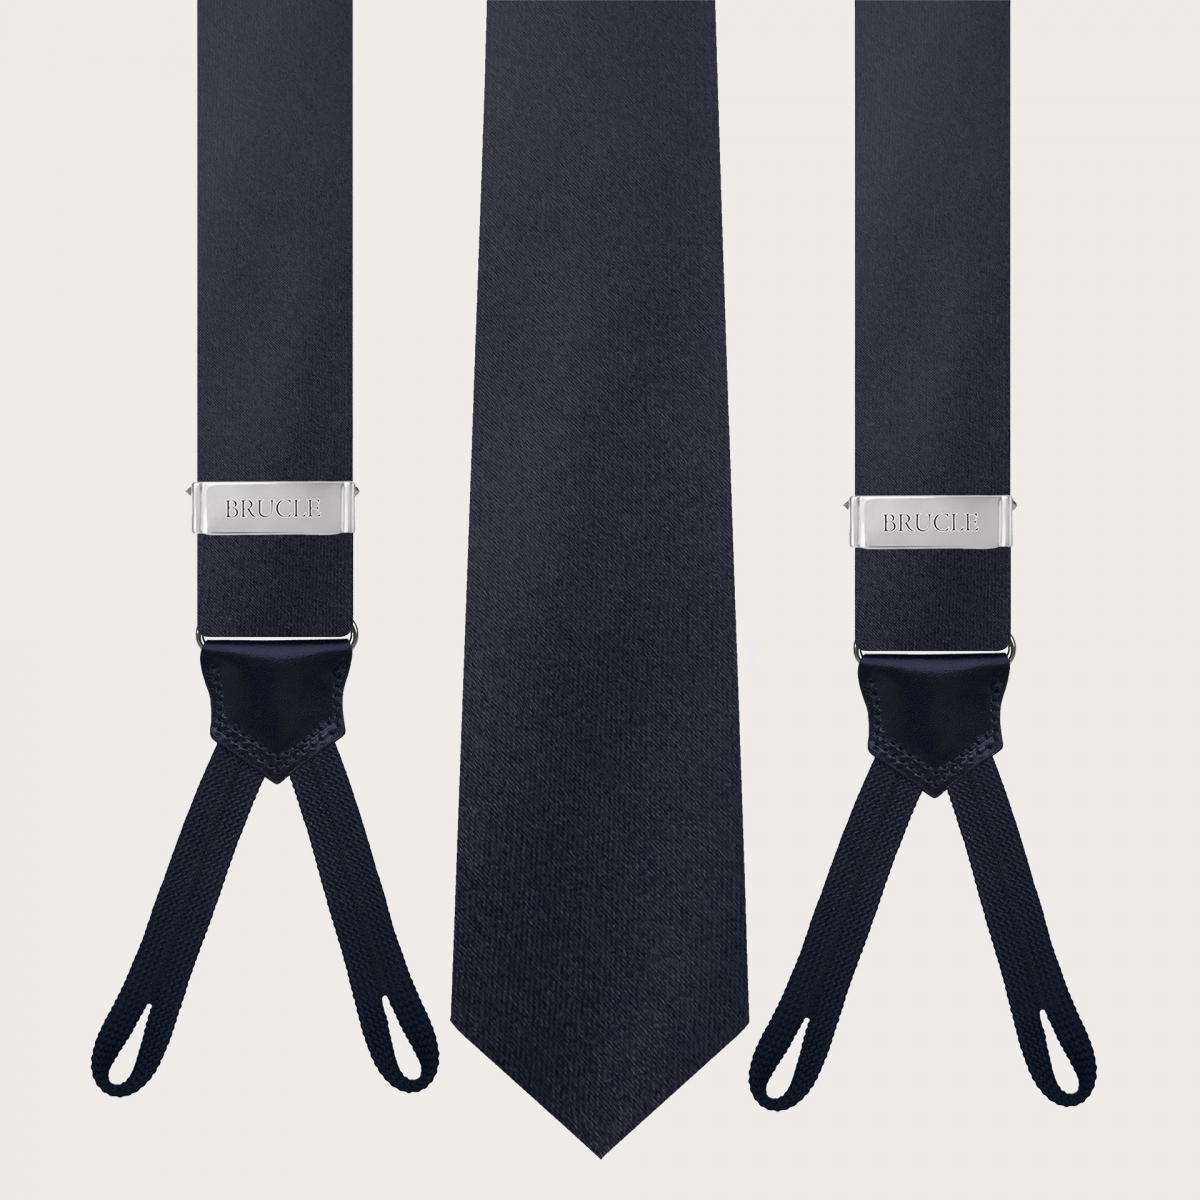 Conjunto coordinado de corbata y tirantes para botones en seda azul marino